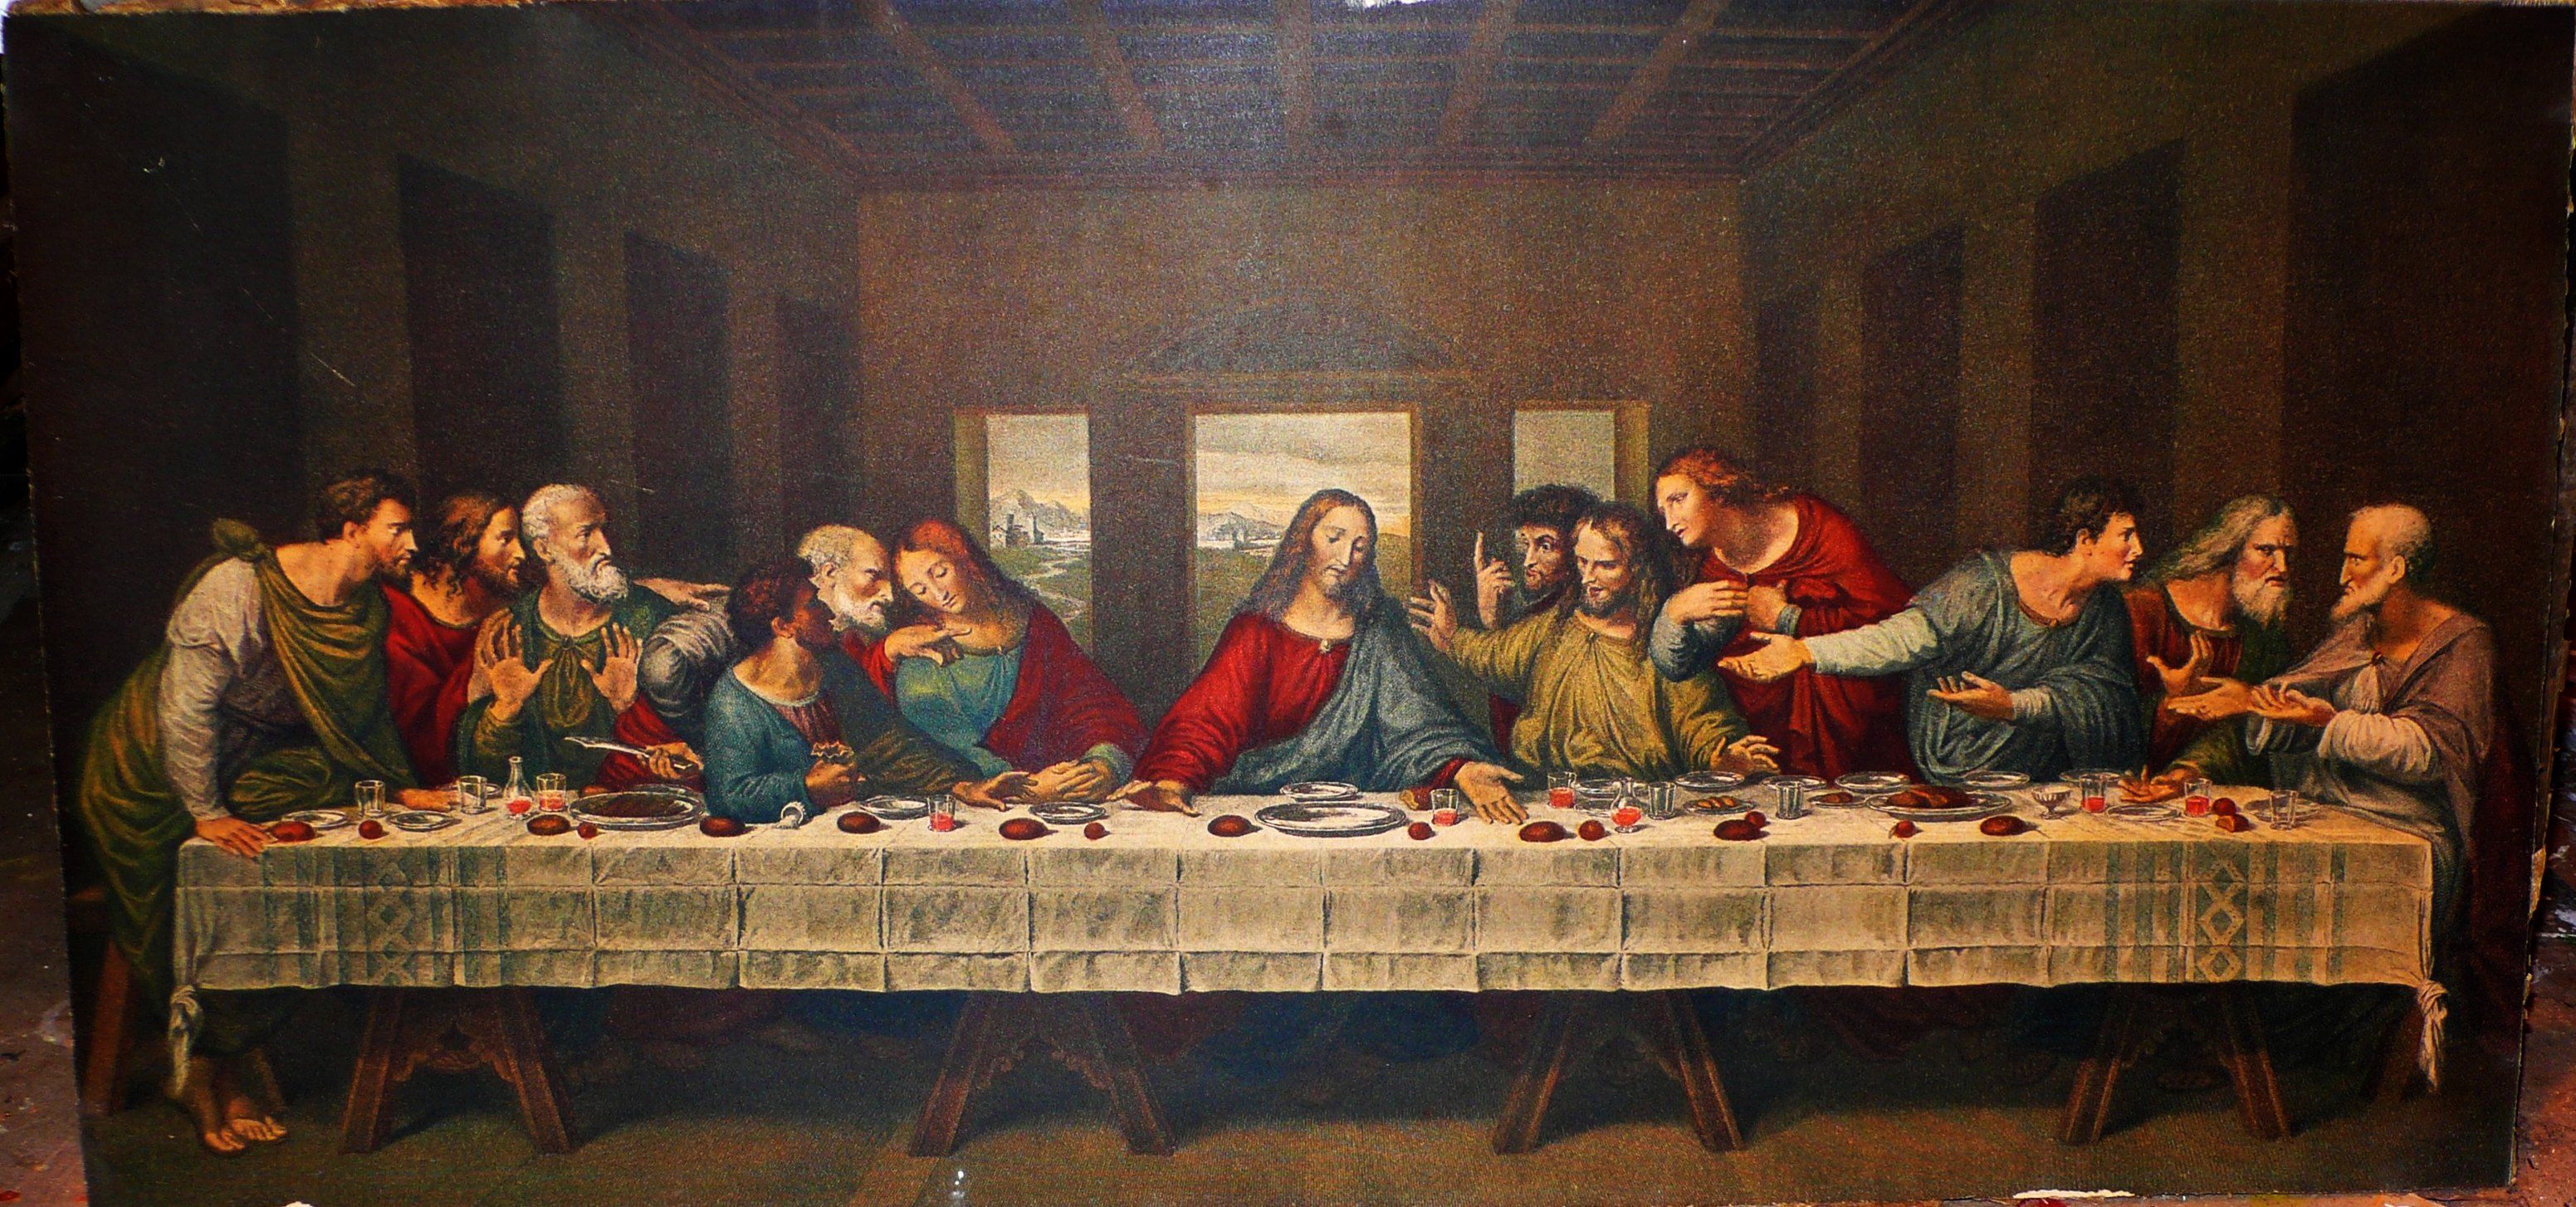 The original last supper by Da Vinci!. Cuadro de la última cena, La ultima cena, Ultima cena de jesus